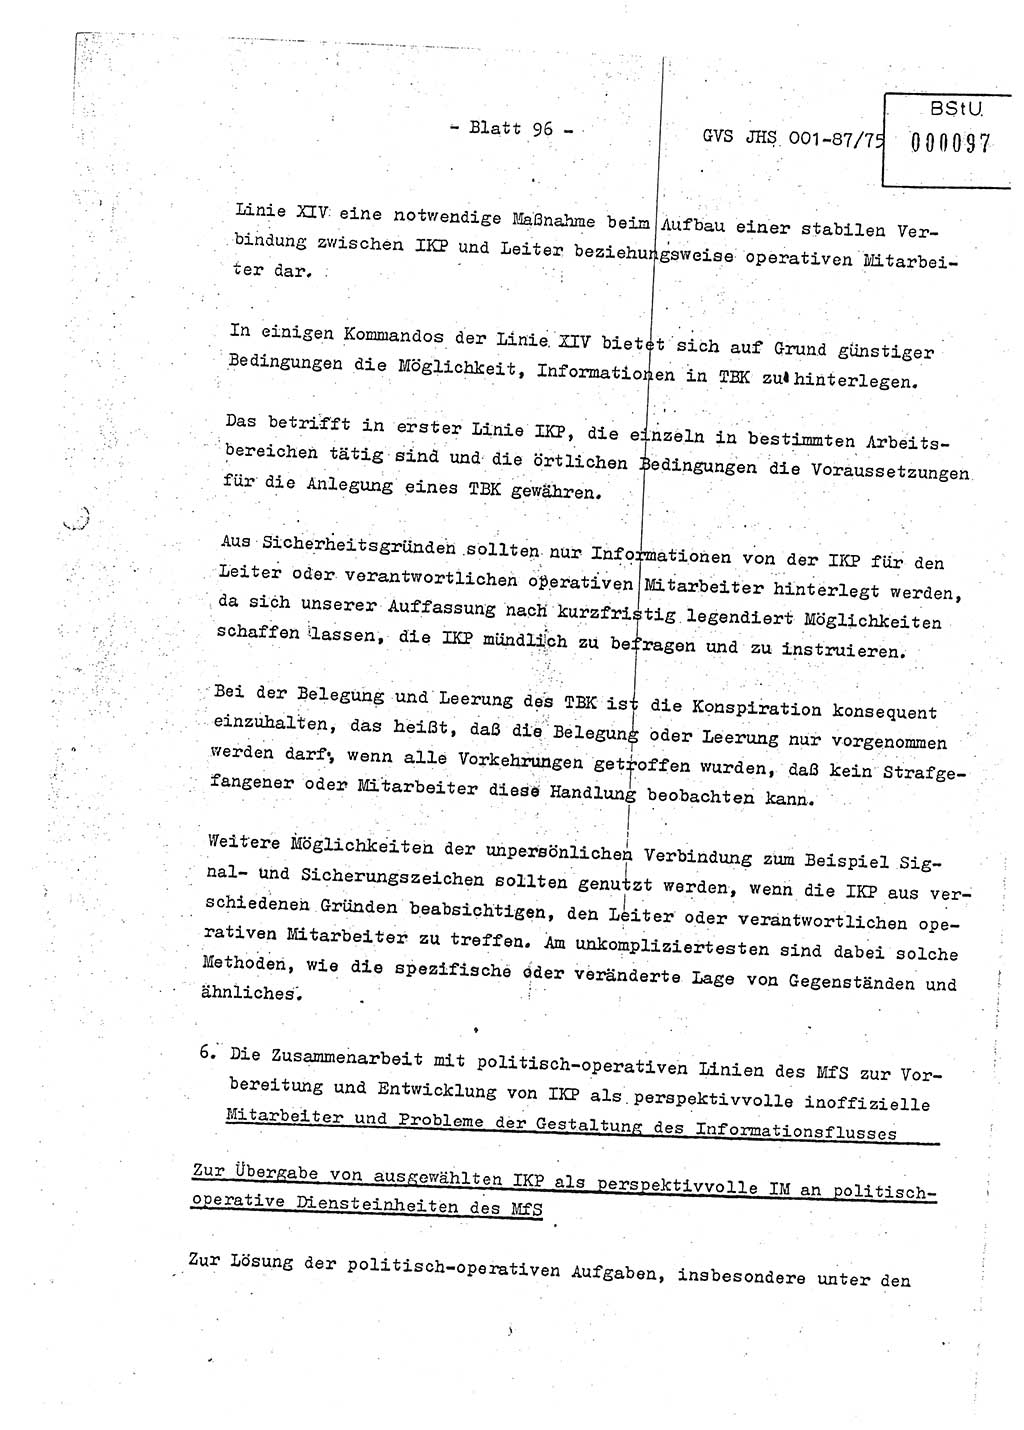 Diplomarbeit Hauptmann Volkmar Heinz (Abt. ⅩⅣ), Oberleutnant Lothar Rüdiger (BV Lpz. Abt. Ⅺ), Ministerium für Staatssicherheit (MfS) [Deutsche Demokratische Republik (DDR)], Juristische Hochschule (JHS), Geheime Verschlußsache (GVS) o001-87/75, Potsdam 1975, Seite 96 (Dipl.-Arb. MfS DDR JHS GVS o001-87/75 1975, S. 96)